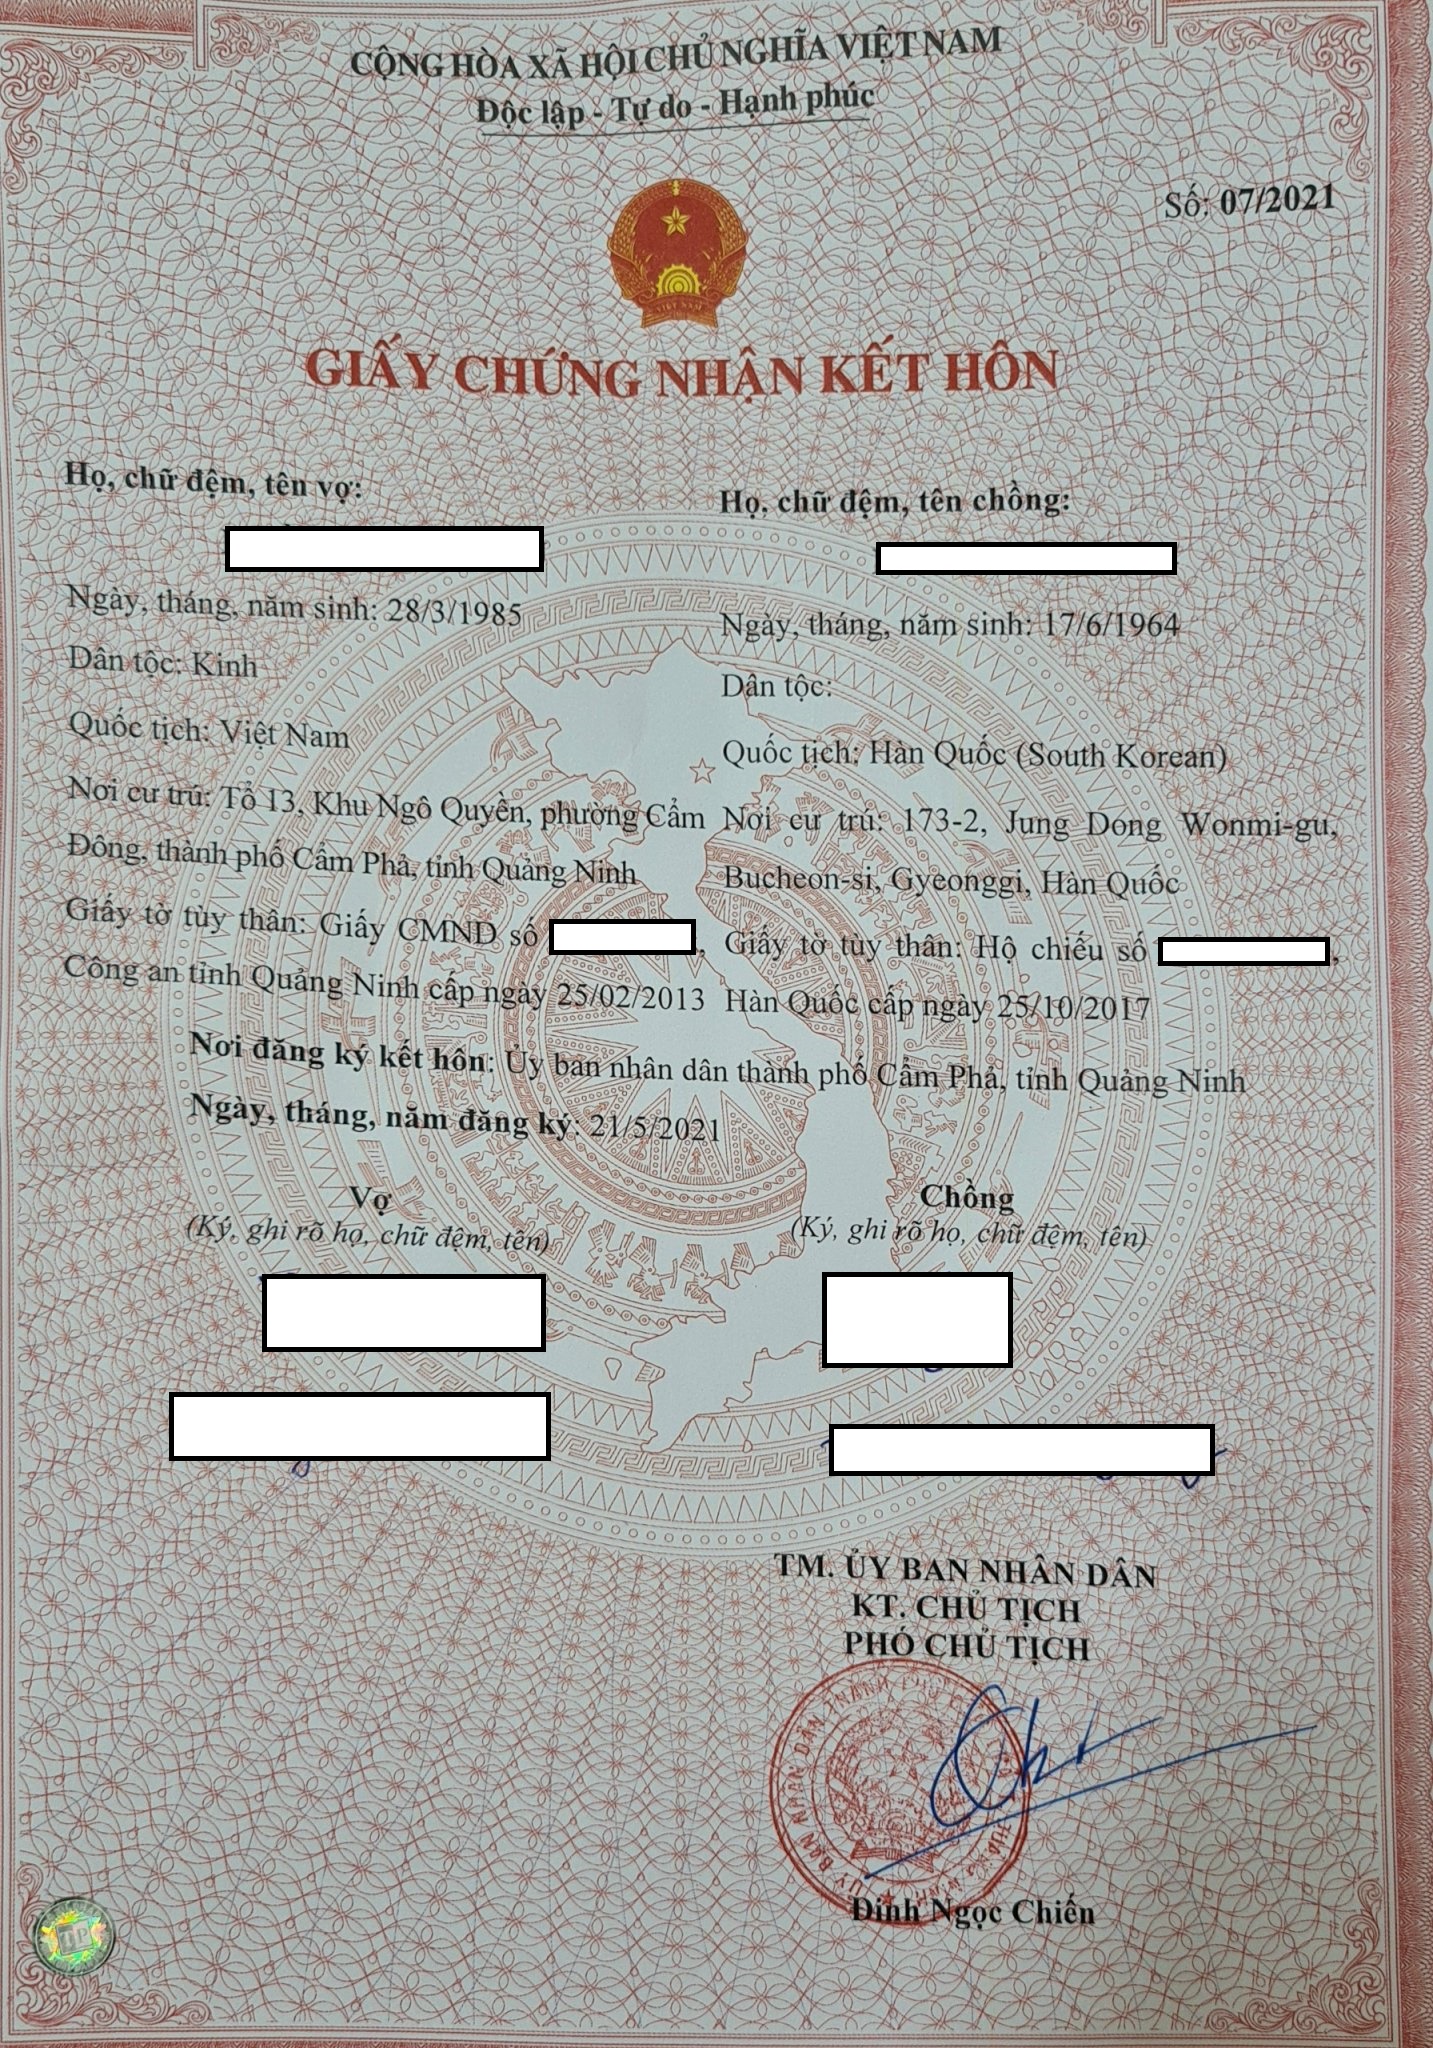 Giấy chứng nhận kết hôn | Bất hợp pháp kết hôn với người Hàn Quốc